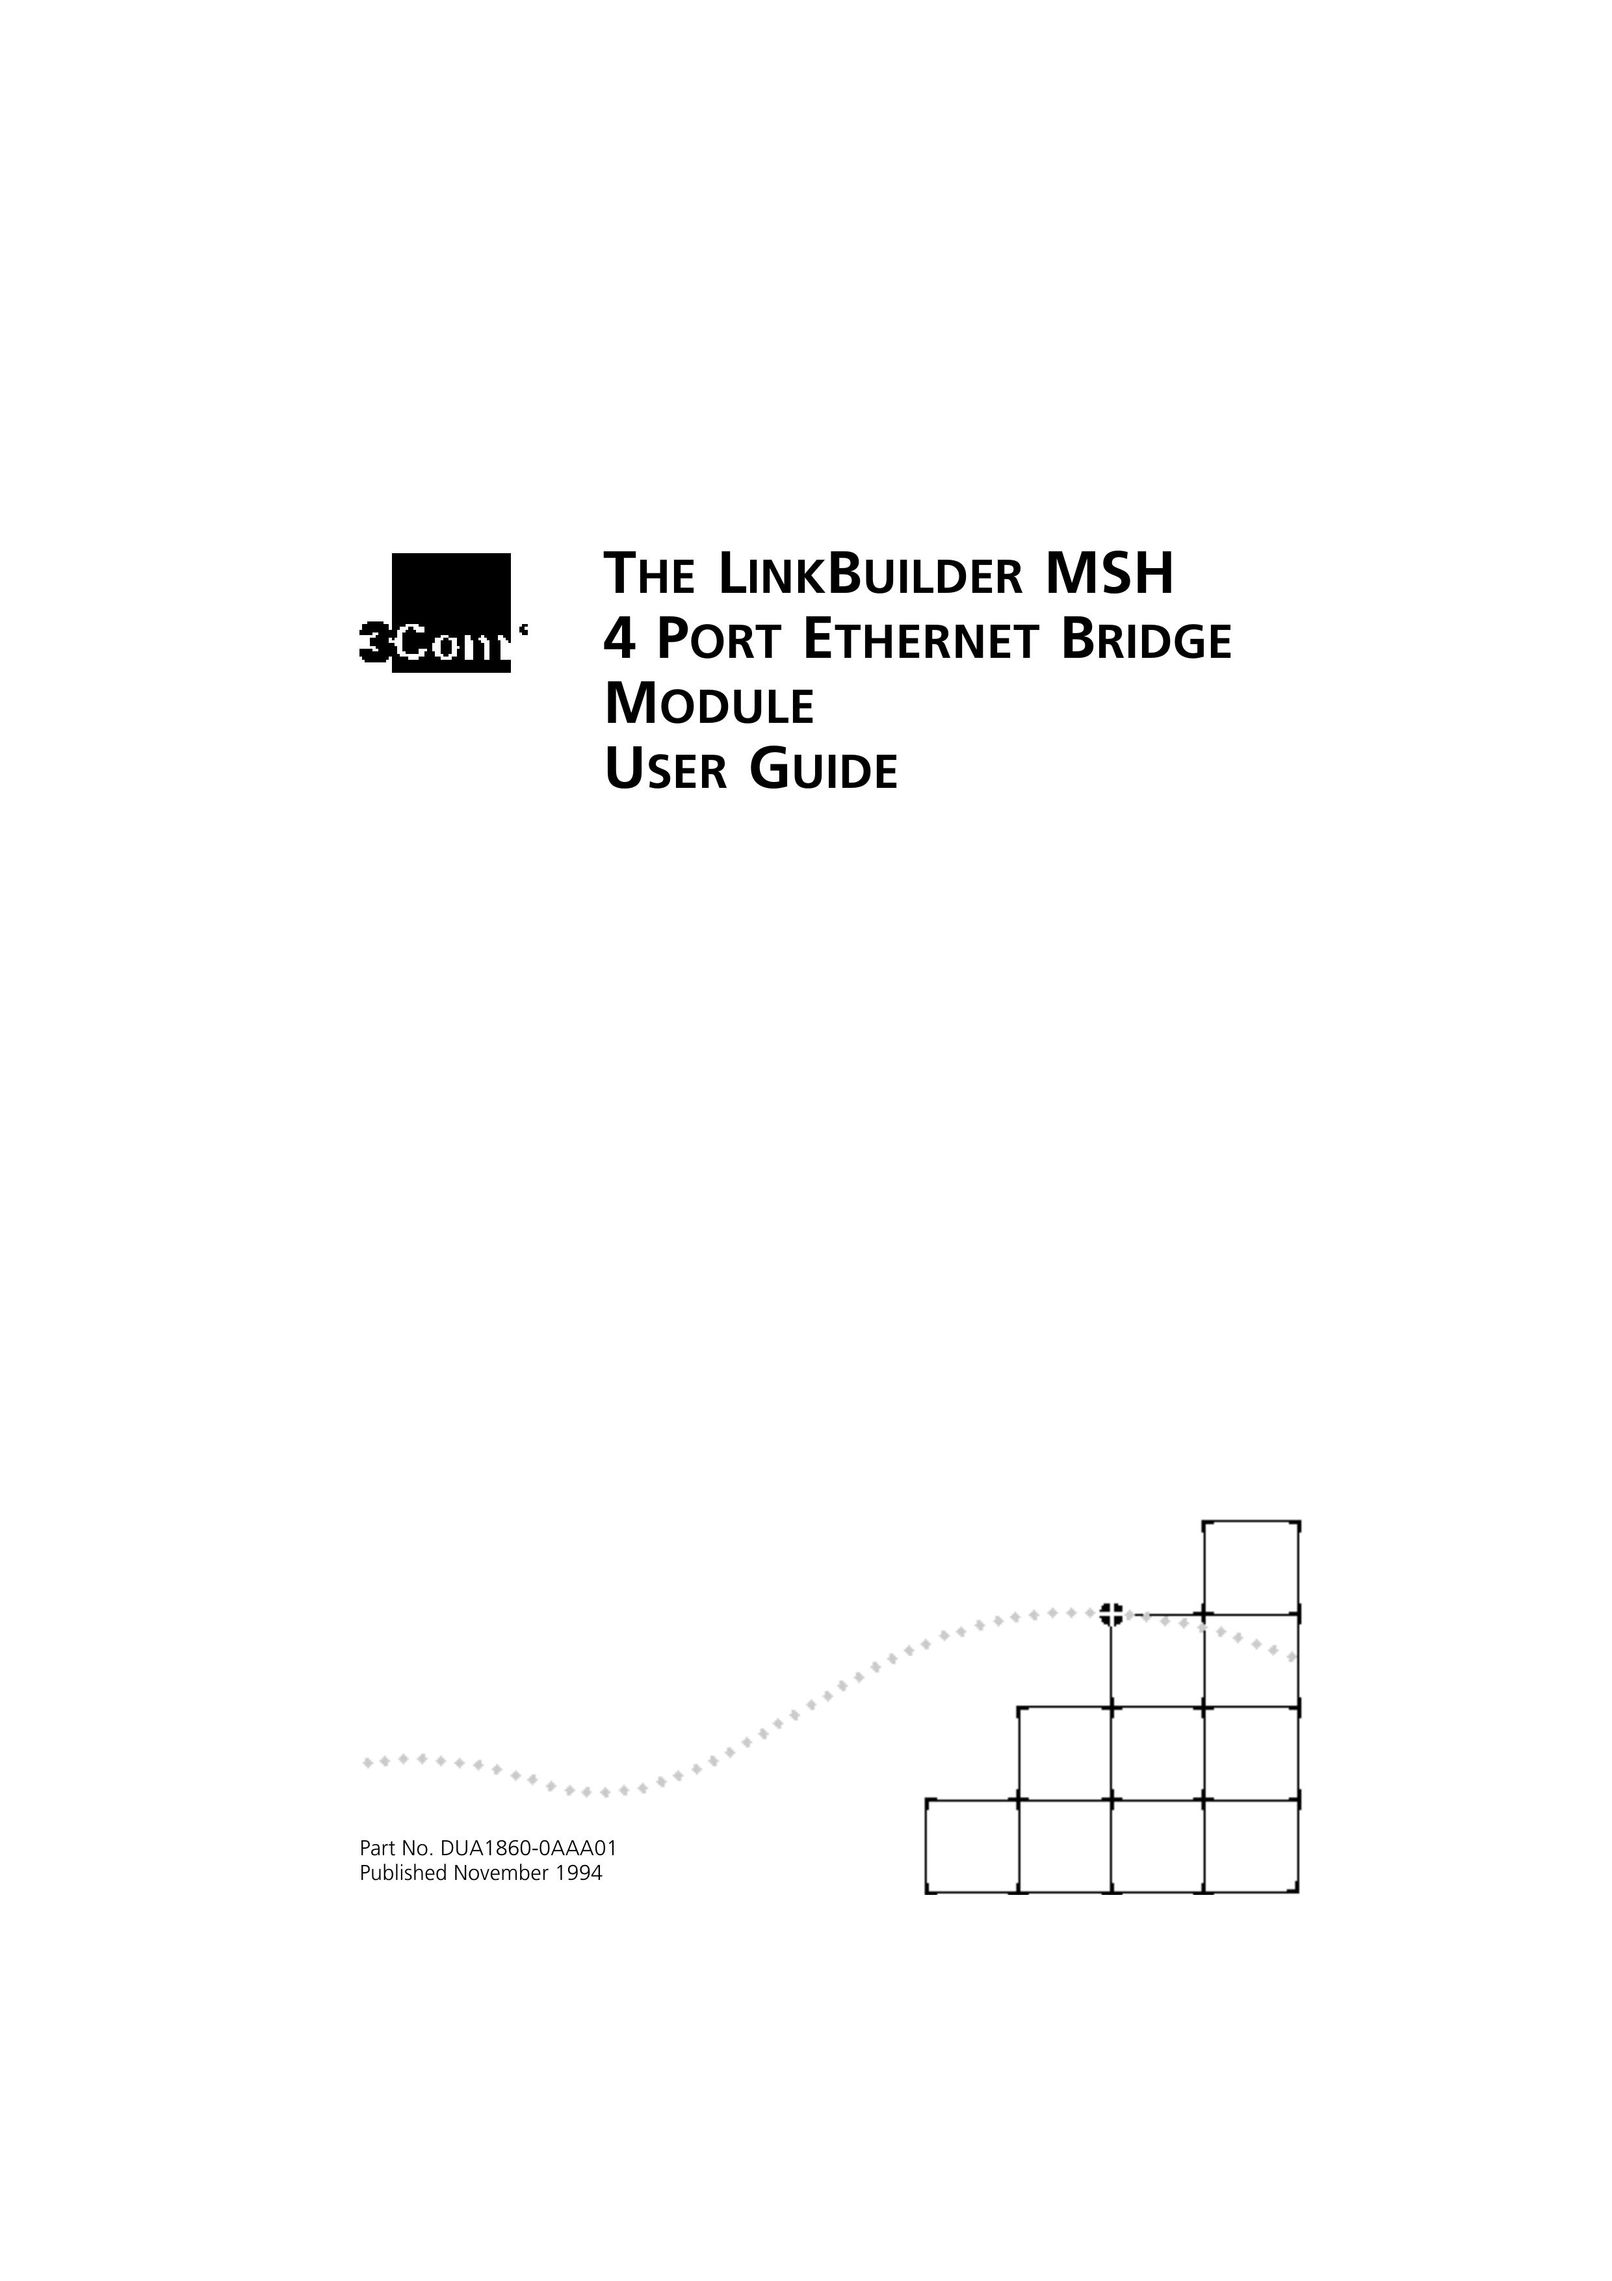 3Com LINKBUILDER MSH 4 PORT ETHERNET BRIDGE MODULE Network Hardware User Manual